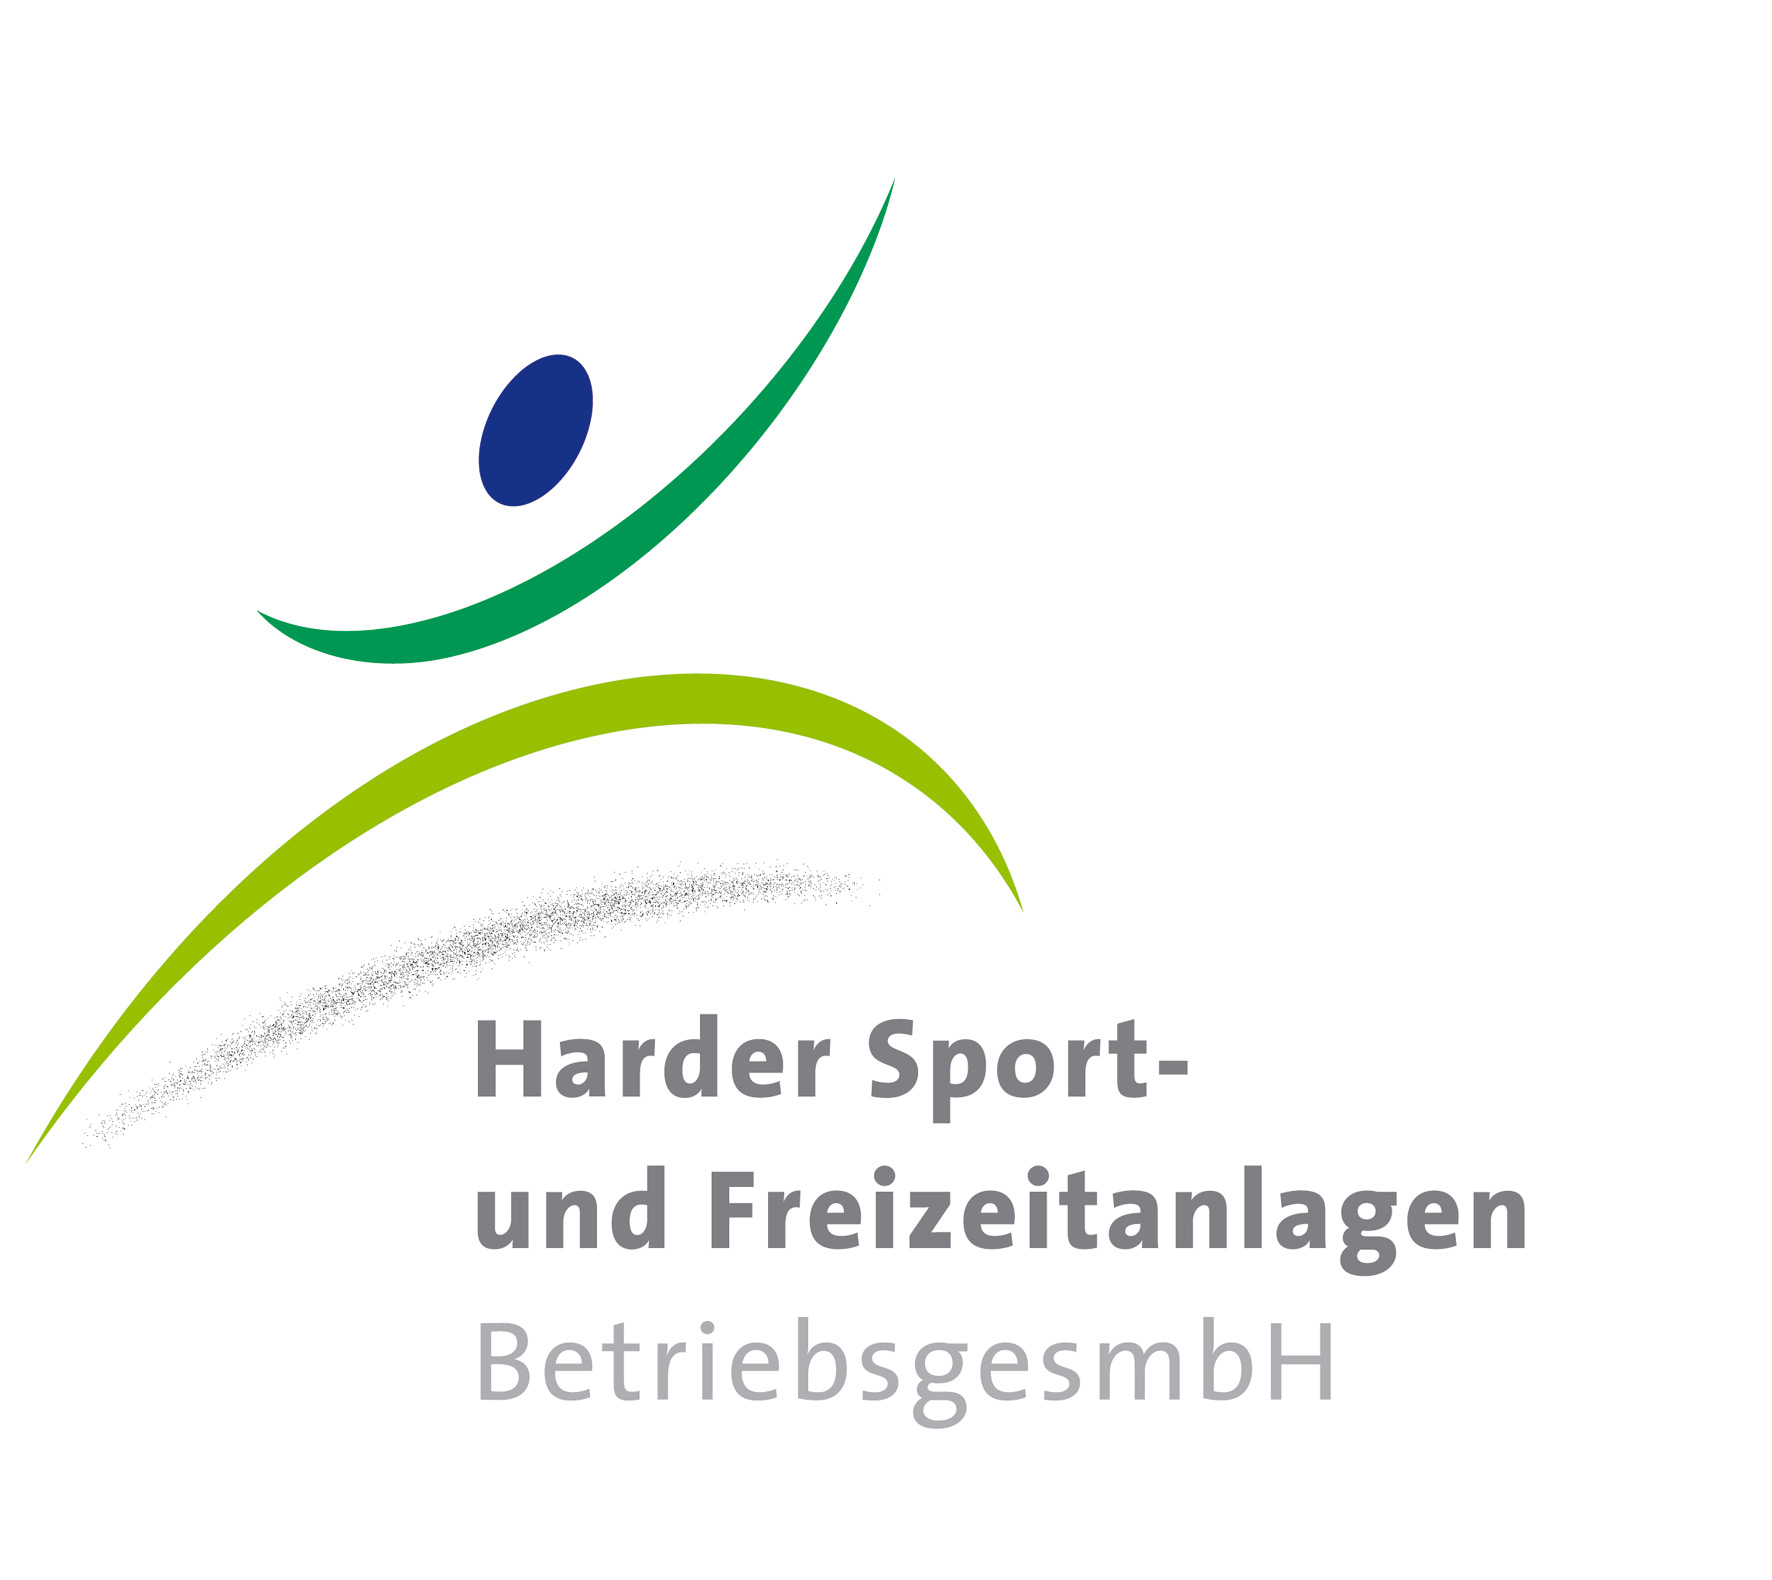 Harder Sport- und Freizeitanlagen BetriebsgesmbH